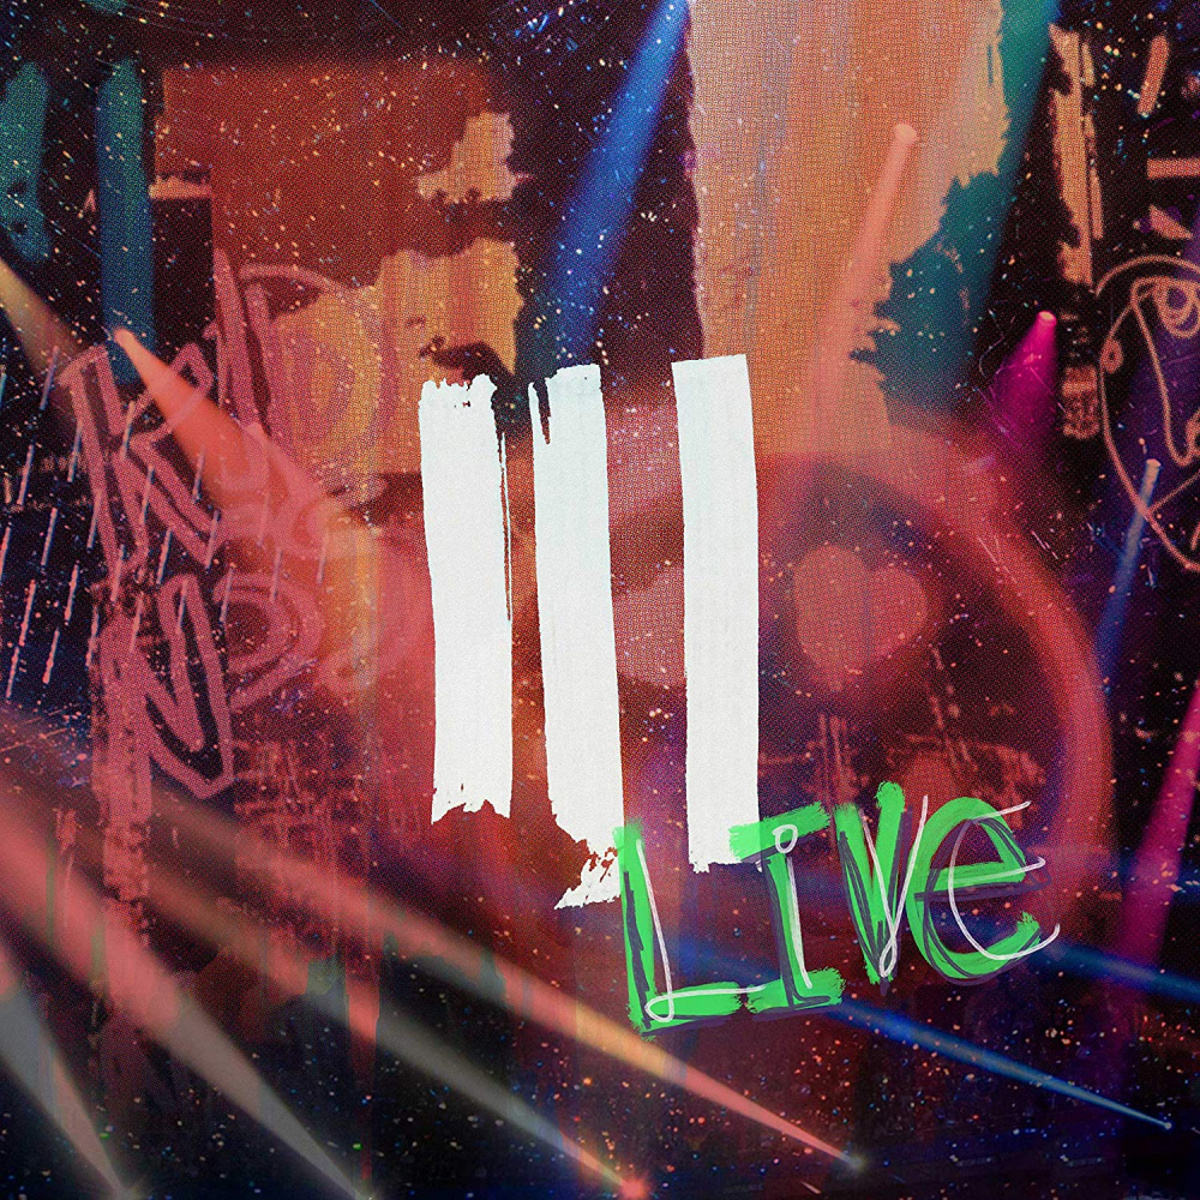 III (Live)